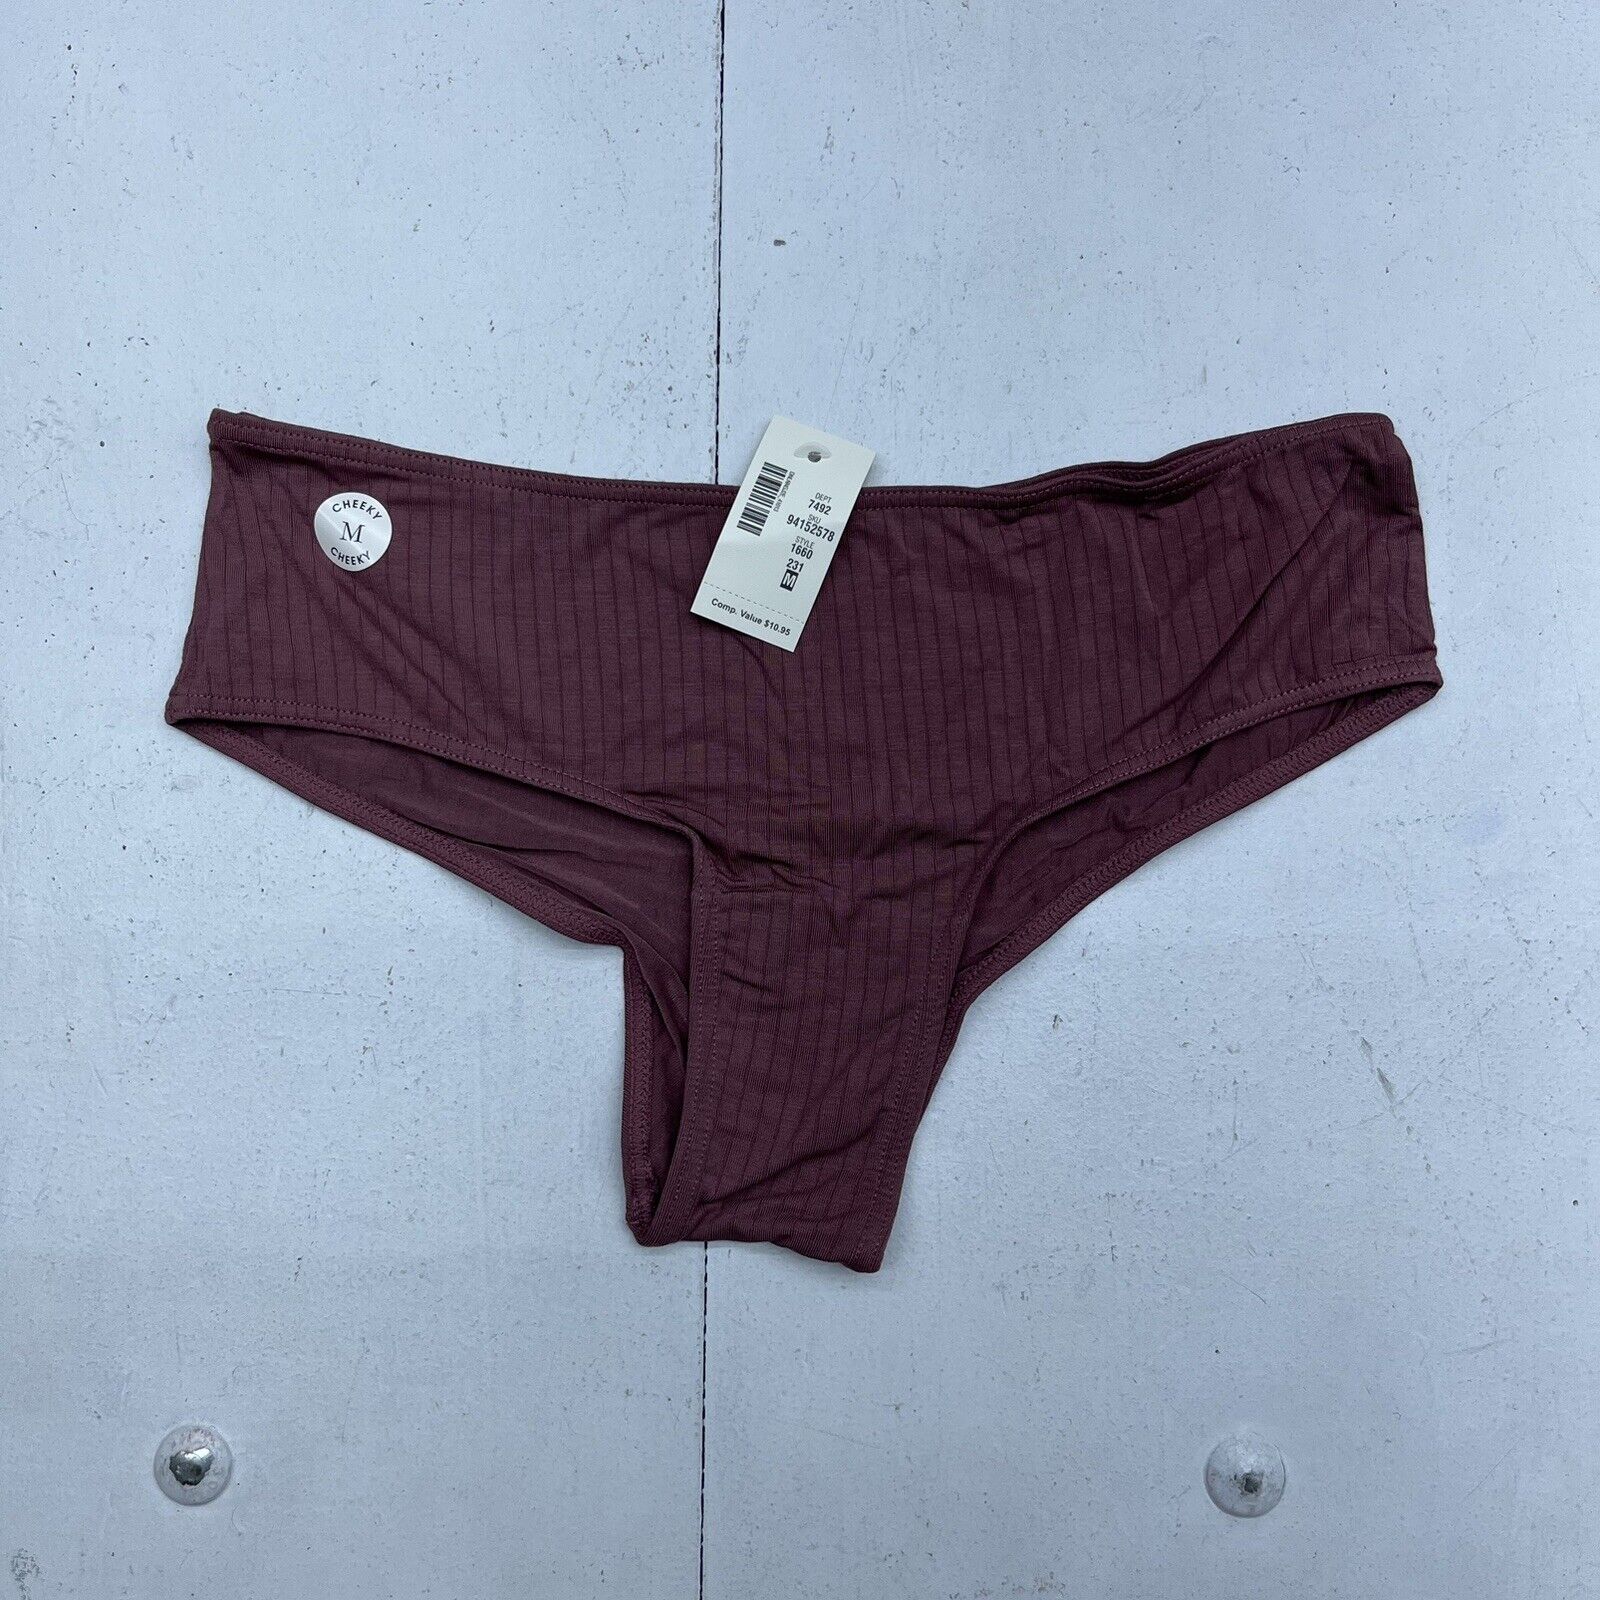 Aeropostale Mauve Cheeky Underwear Women's Size Medium NEW - beyond exchange